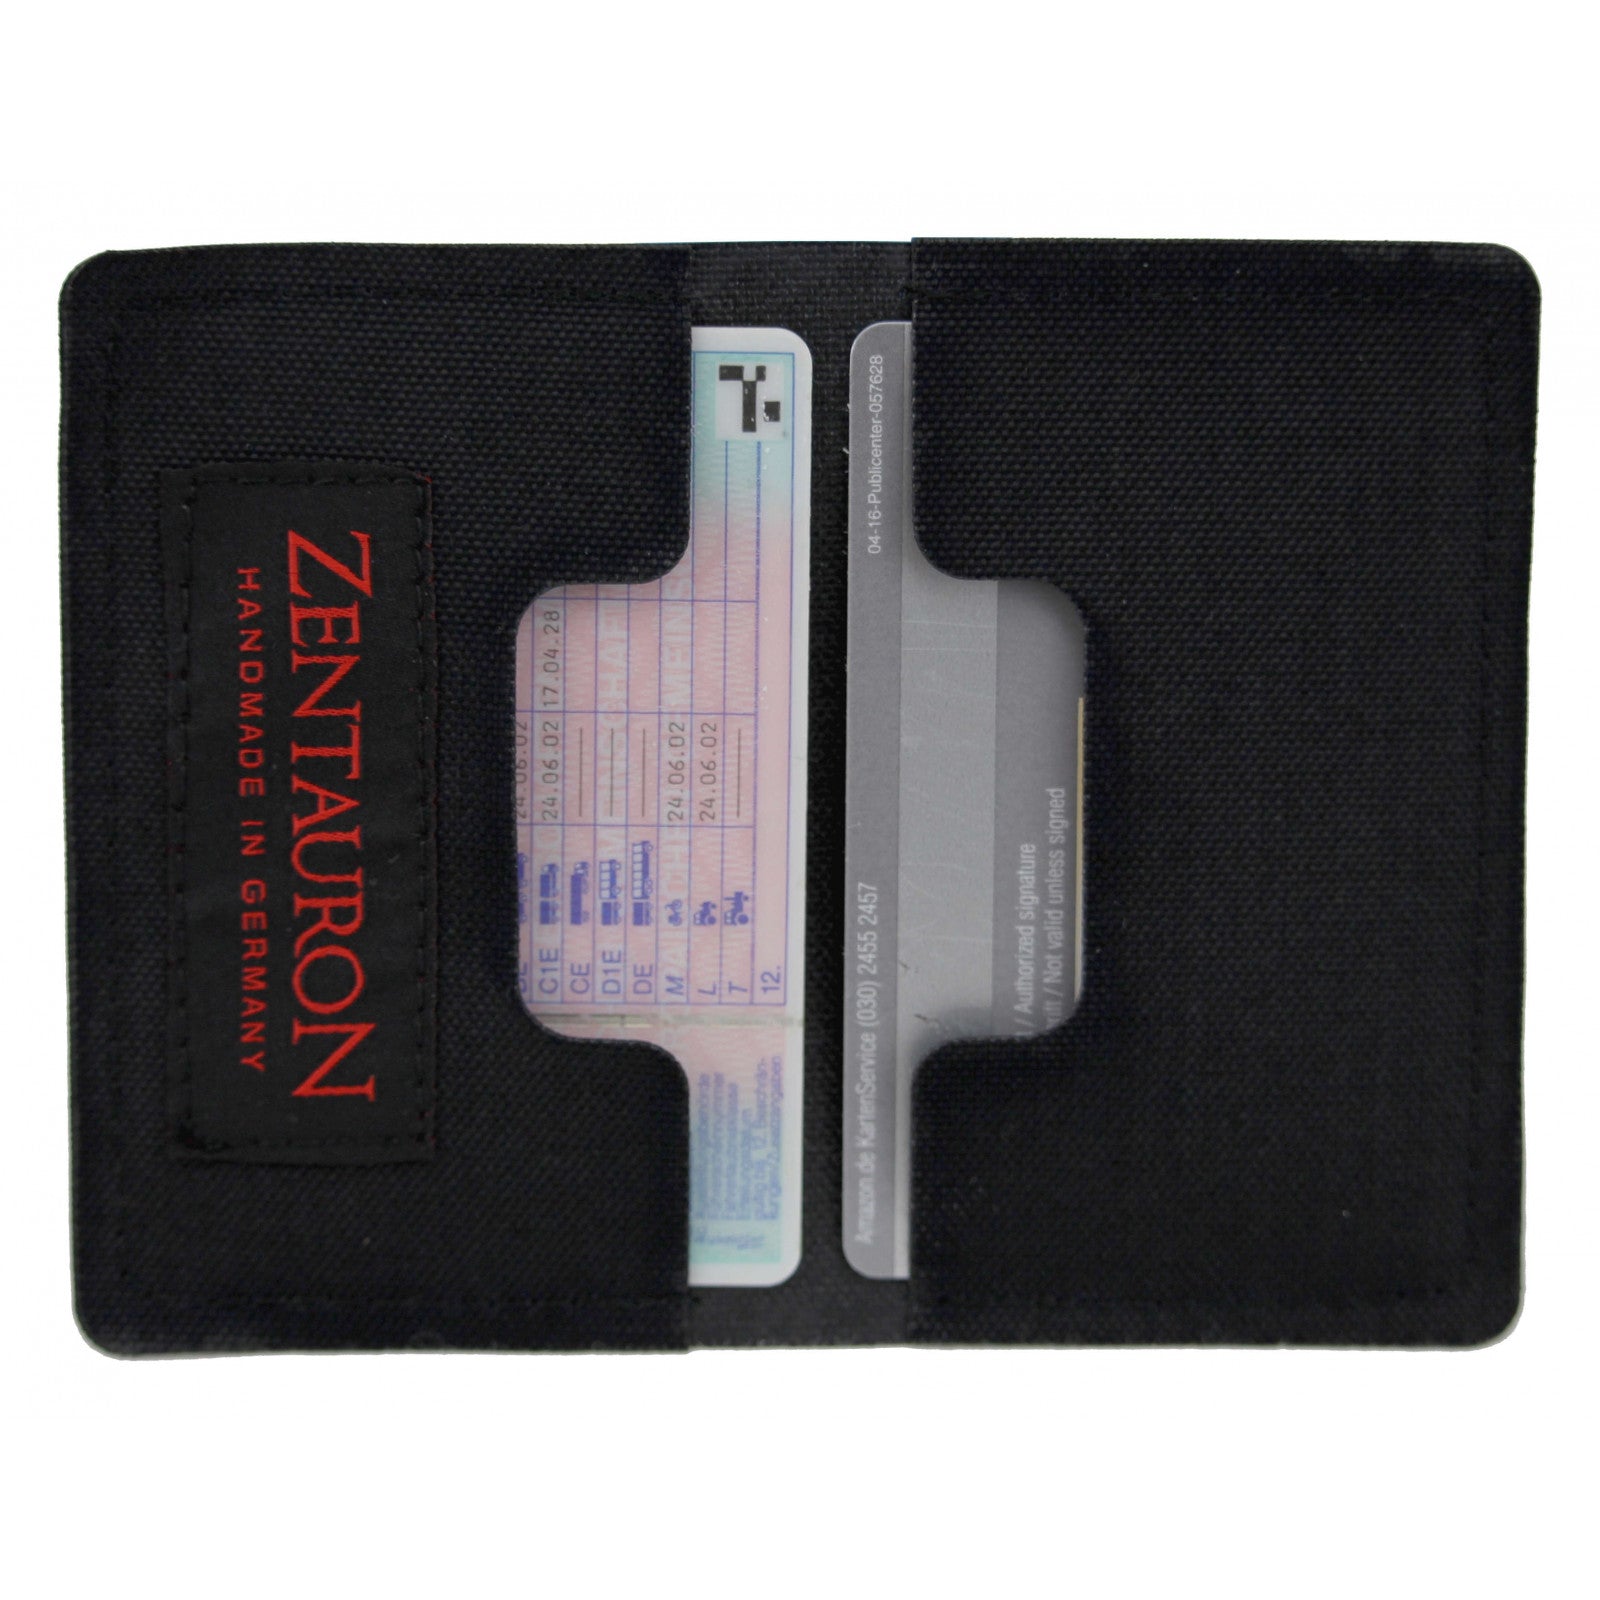 Cardholder  Zentauron   